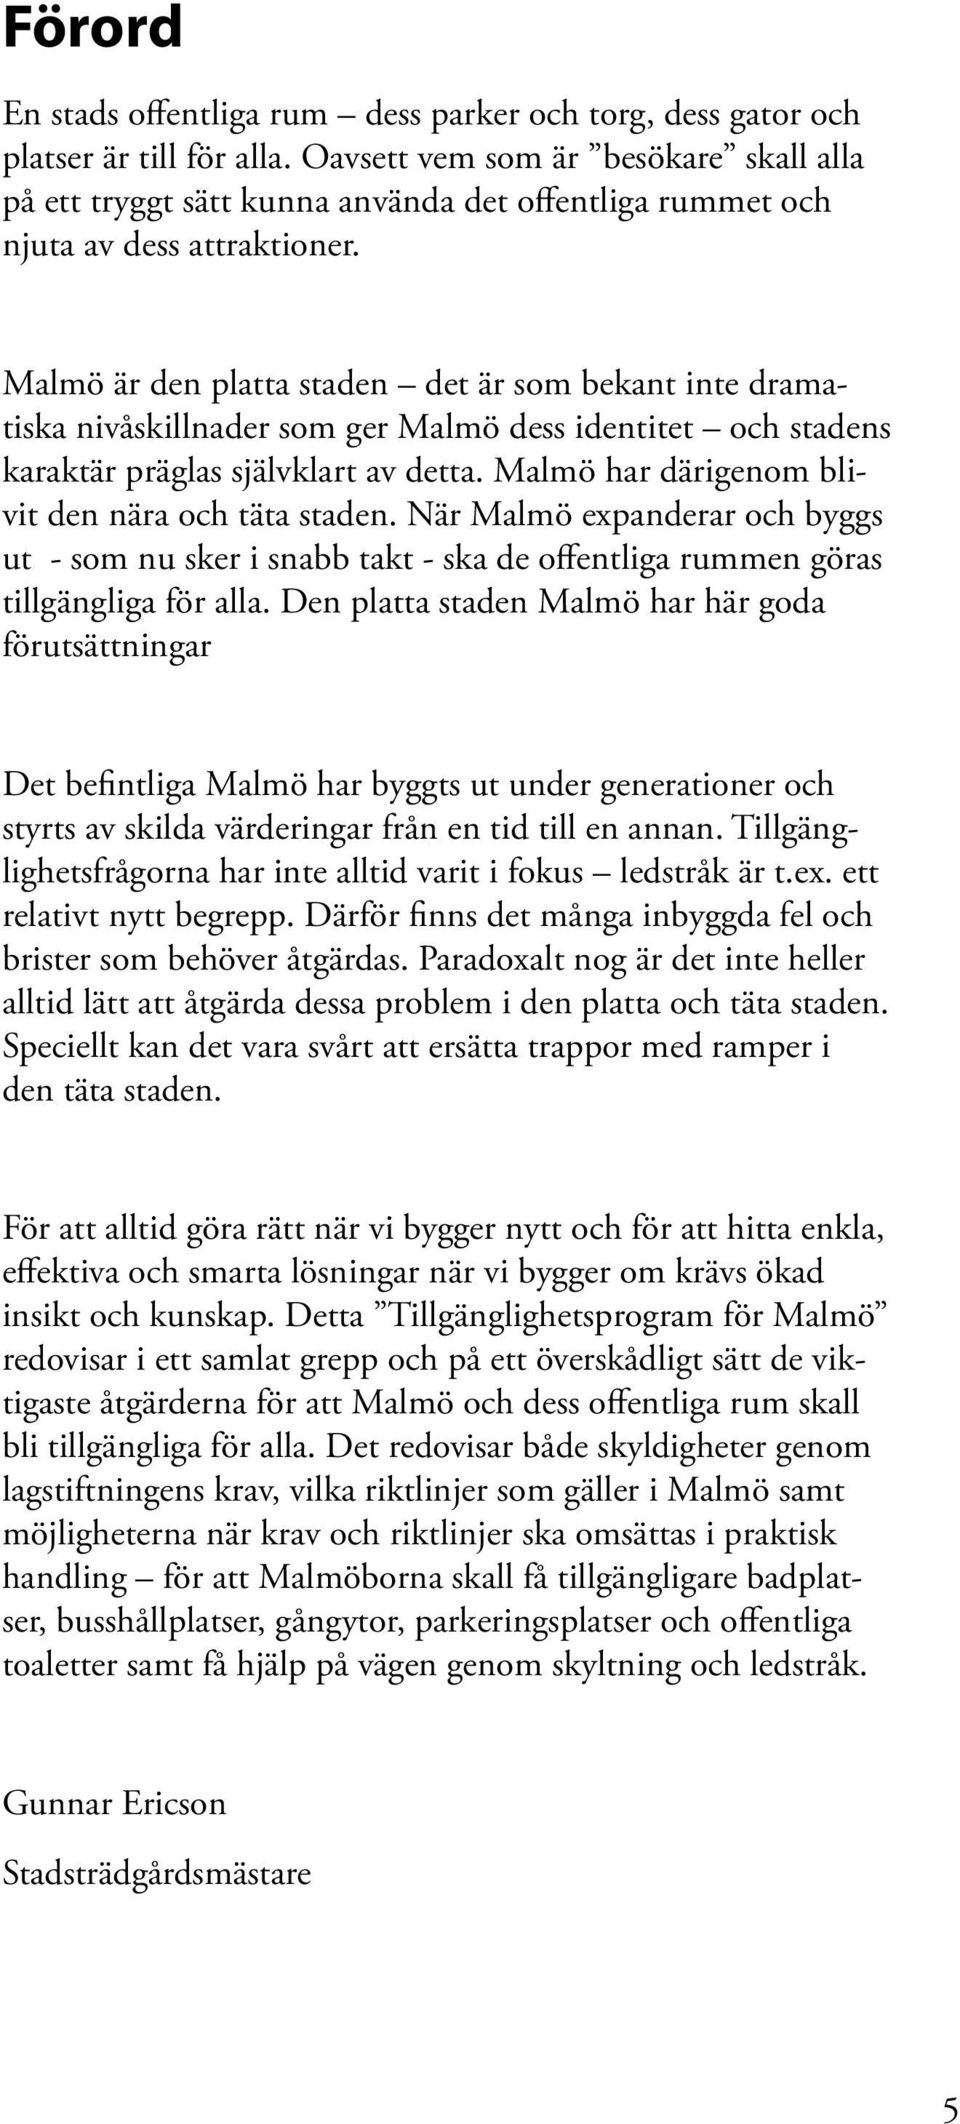 Malmö är den platta staden det är som bekant inte dramatiska nivåskillnader som ger Malmö dess identitet och stadens karaktär präglas självklart av detta.